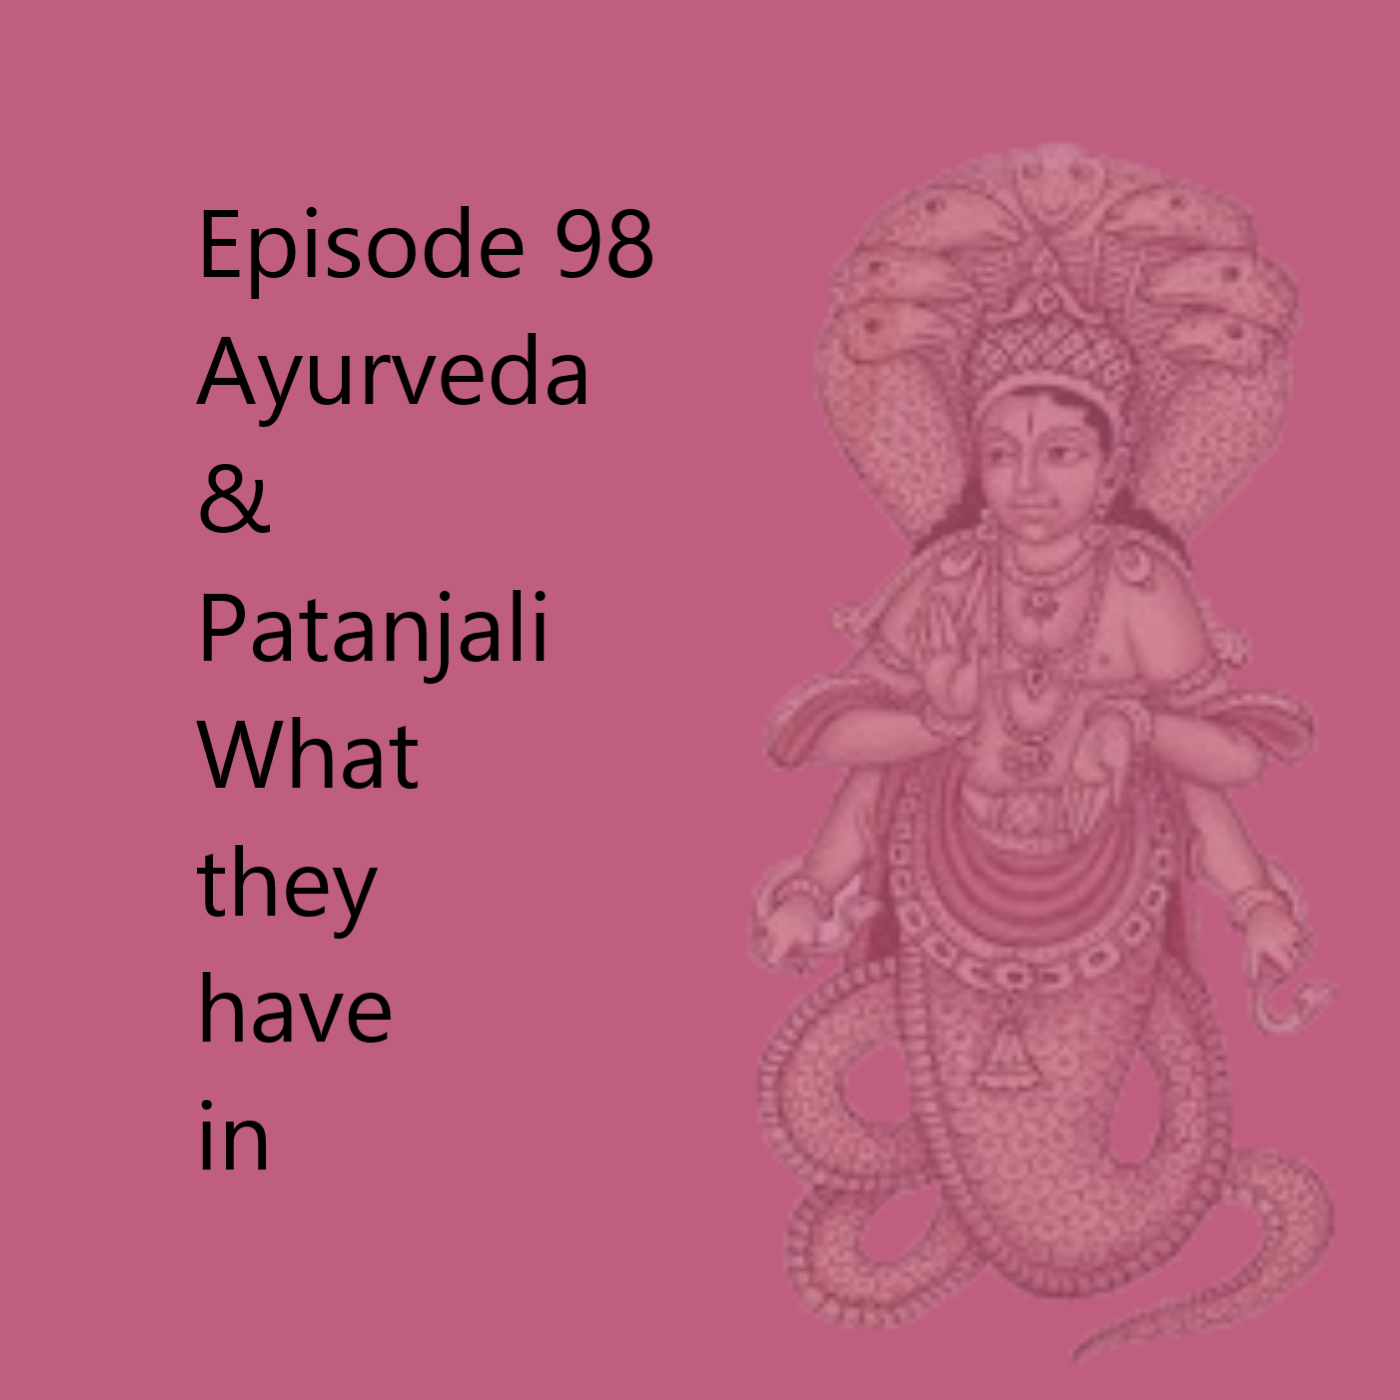 Episode 98 Patanjali & Ayurveda